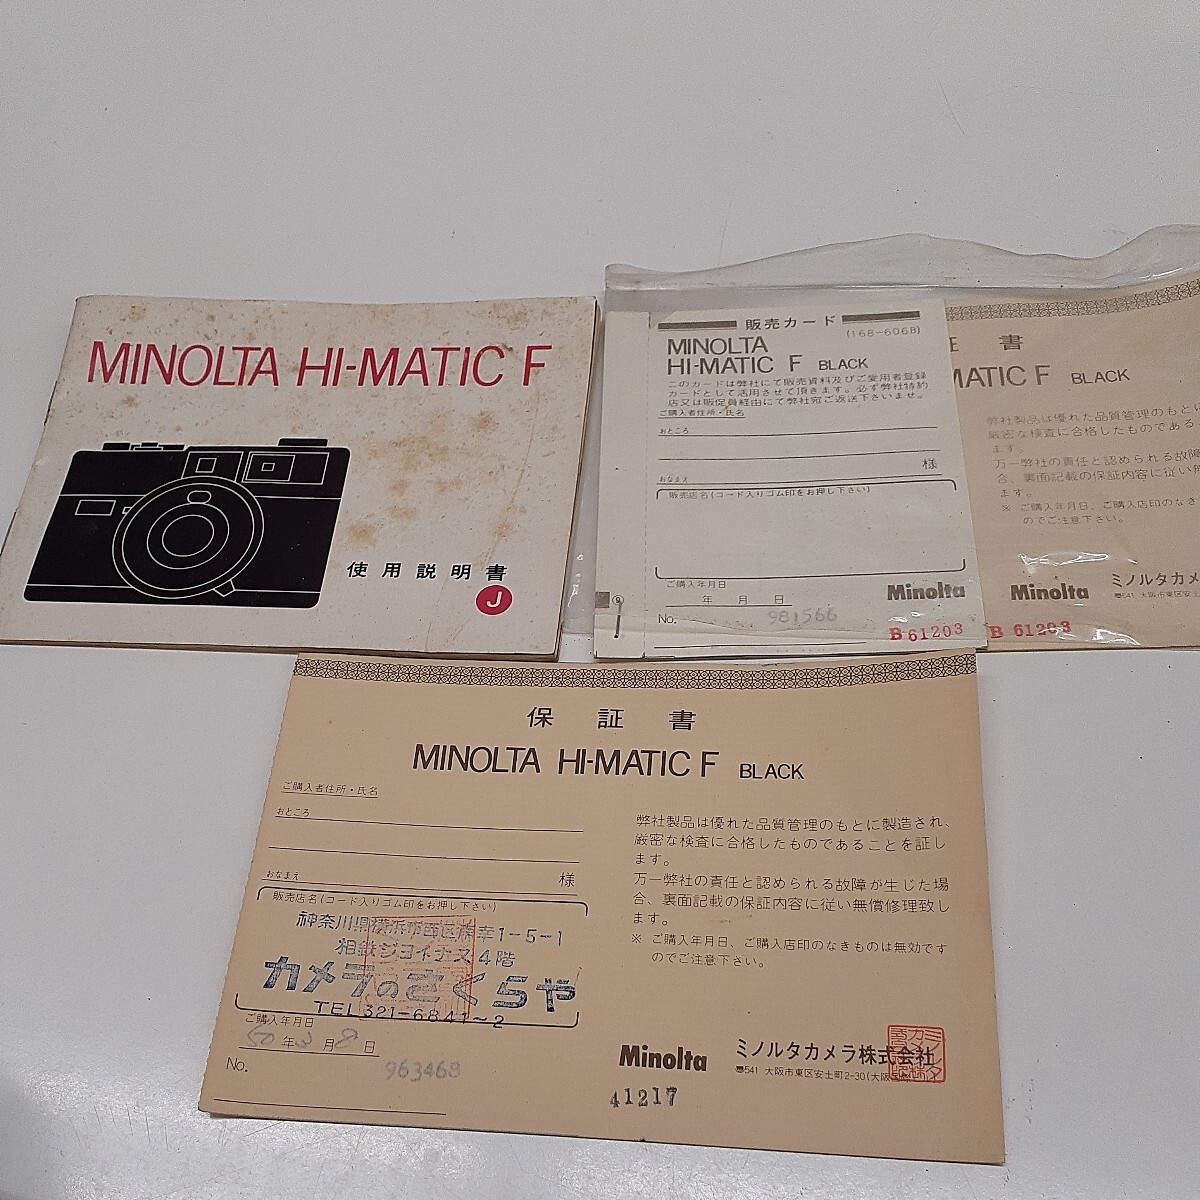 minolta HI-MATIC F ブラック / ROKKOR 1:2.7 f=38mm ミノルタ コンパクト フィルムカメラ 箱 保証書 説明書付き みの画像10